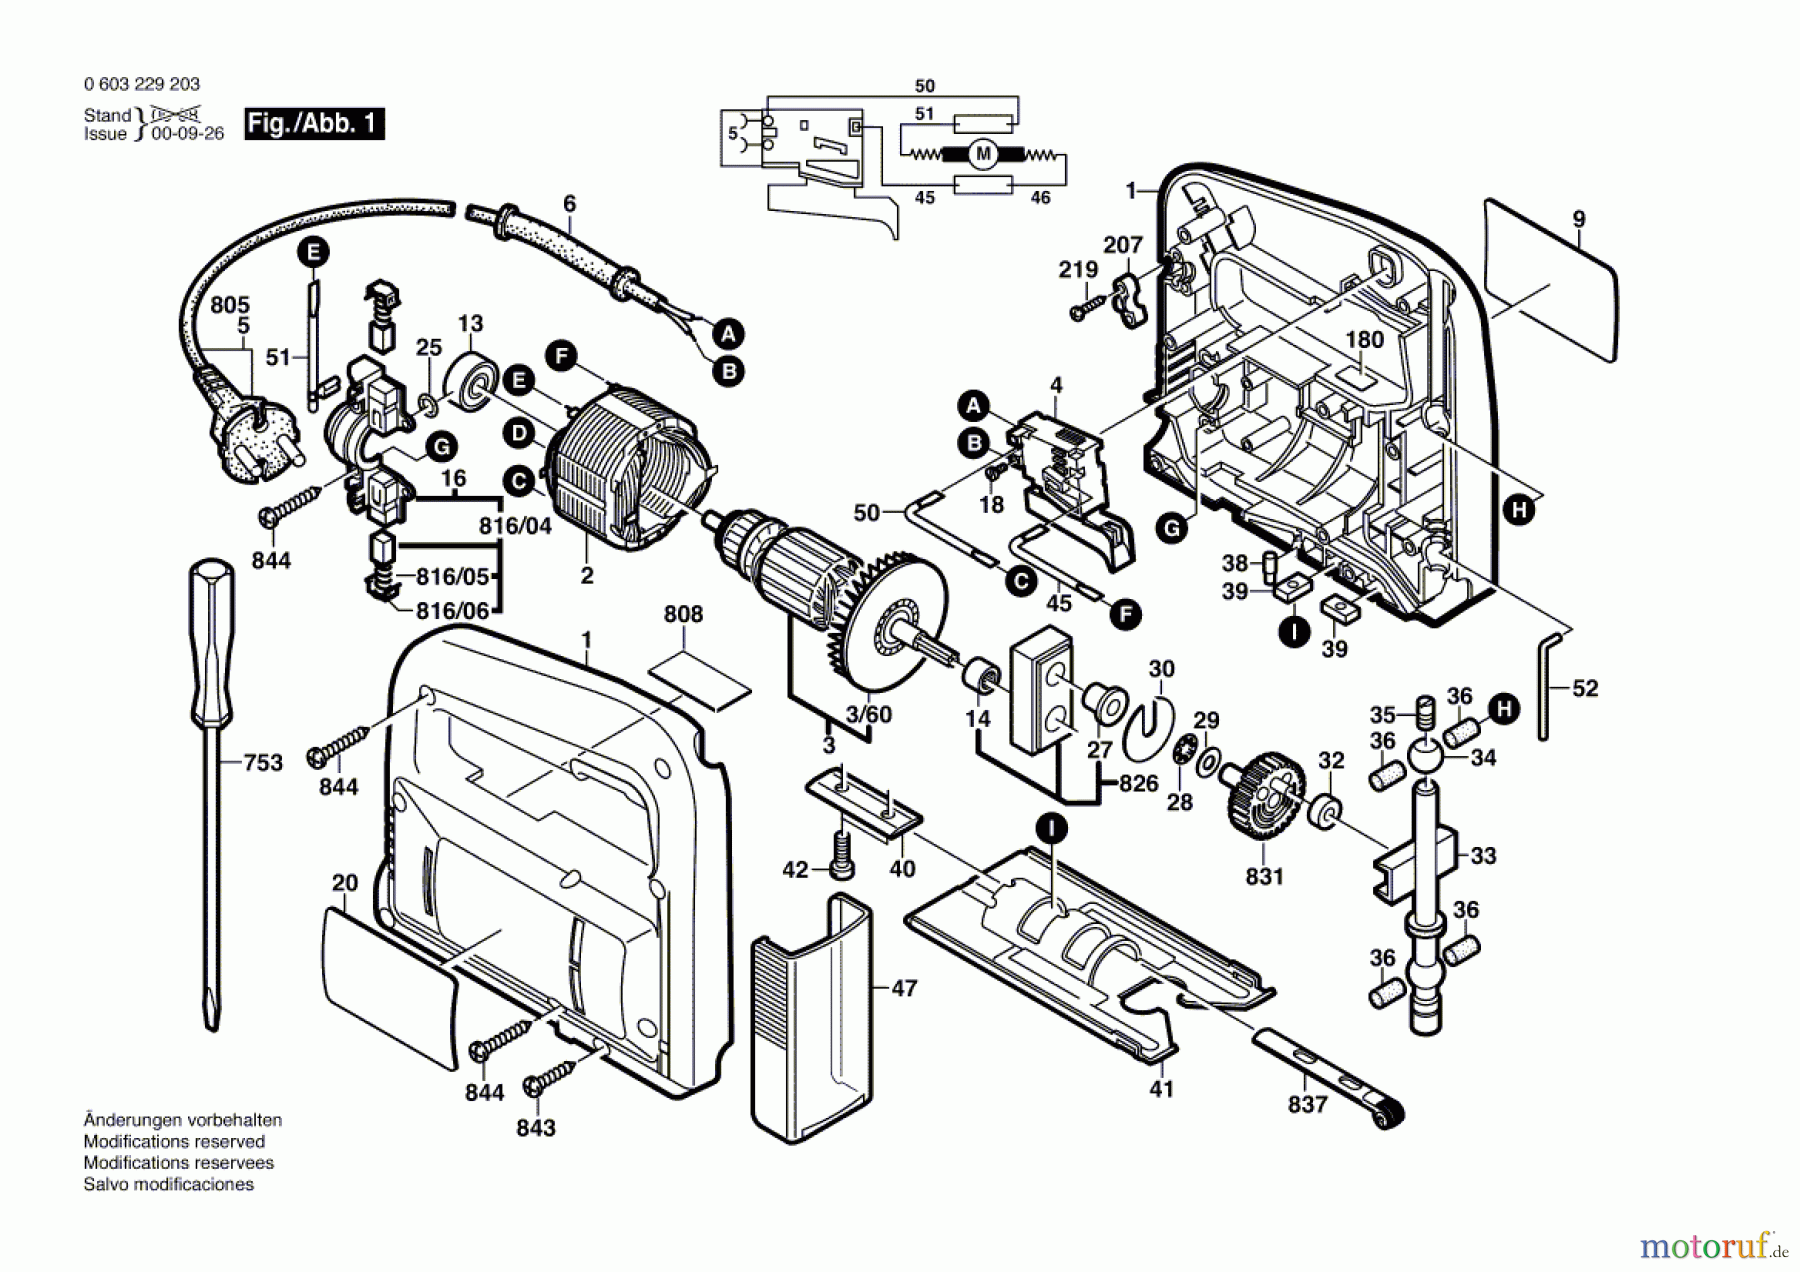  Bosch Werkzeug Stichsäge PST 53 A Seite 1